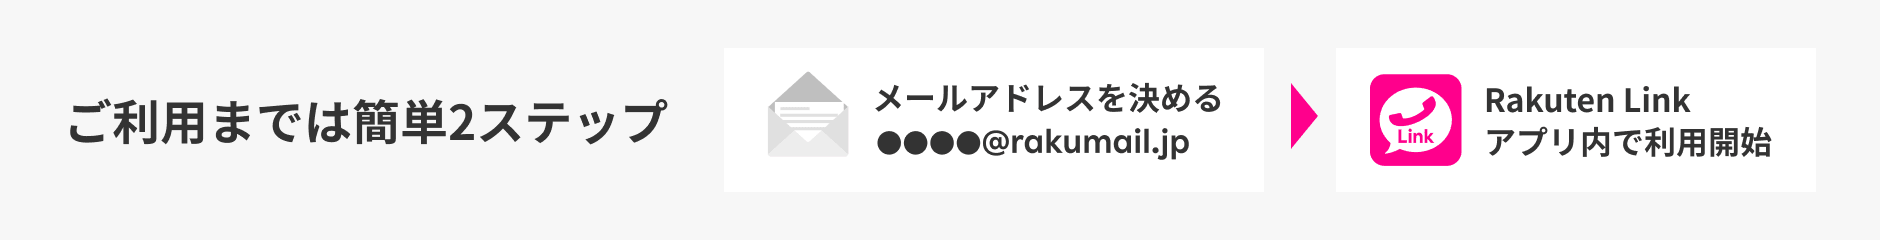 ご利用までは簡単2ステップ メールアドレスを決める → Rakuten Linkアプリ内で利用開始